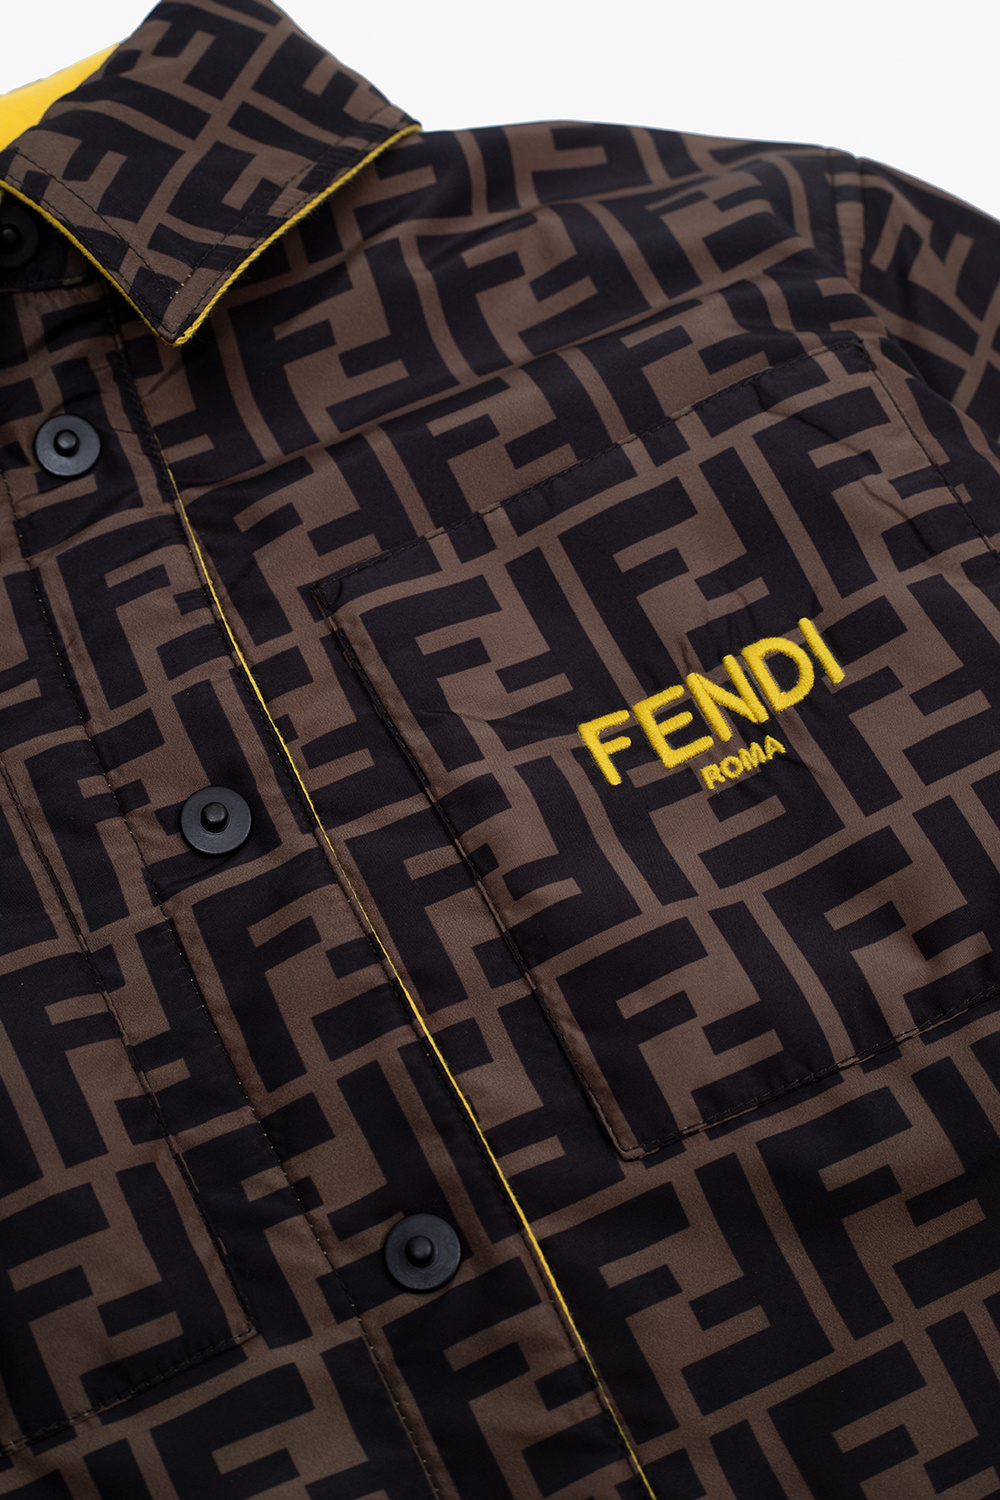 Fendi Kids Jacket with logo